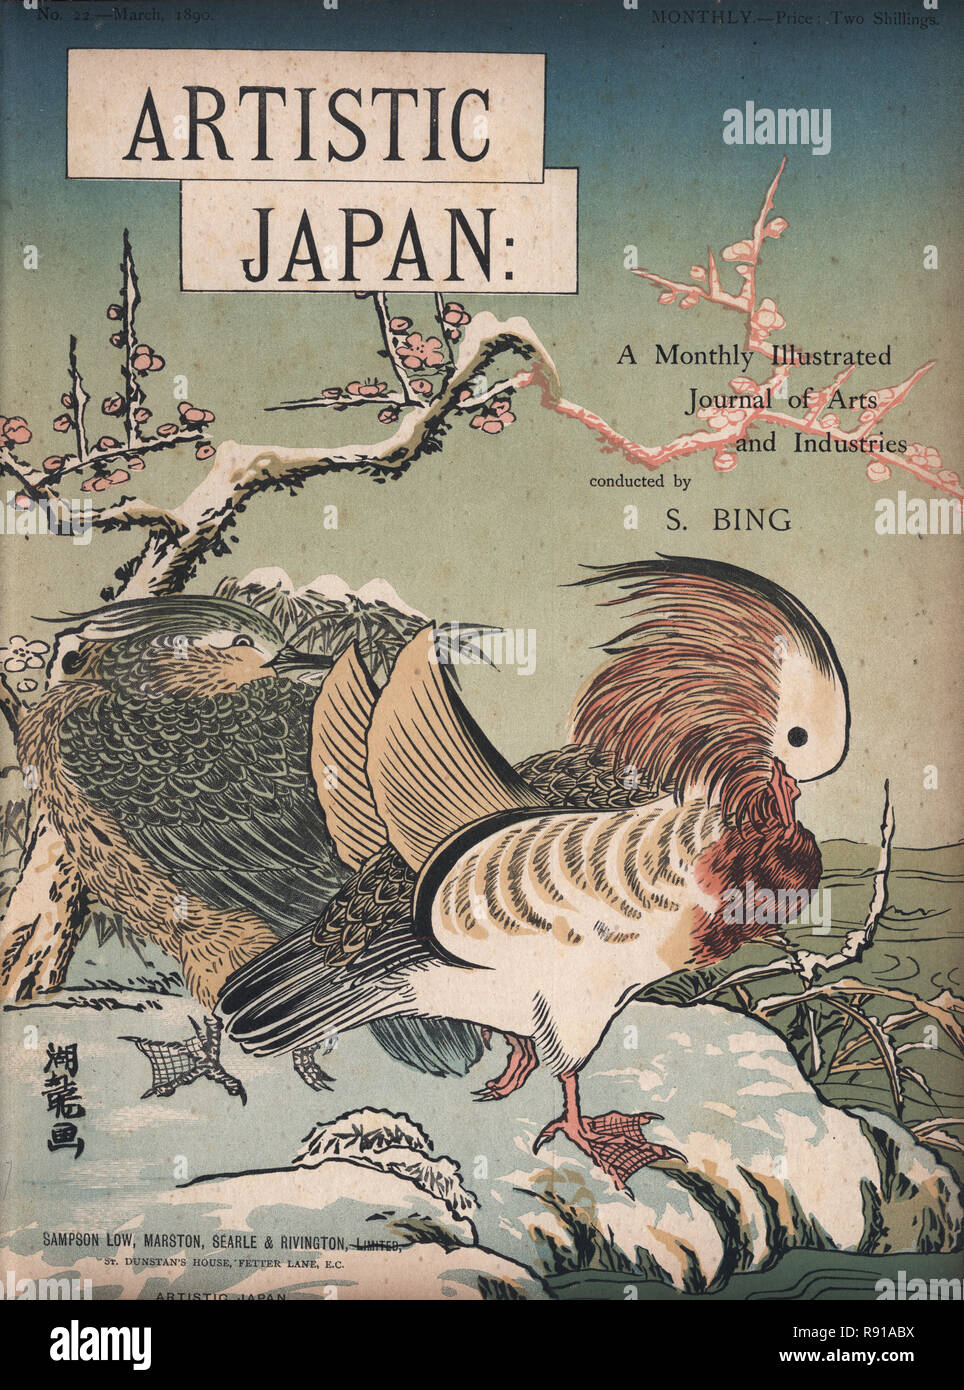 Couverture de la revue Le Japon artistique de l'époque victorienne, 1890 Le canard mandarin (Aix galericulata) est une espèce de canards percheurs trouvés en Asie de l'Est. Banque D'Images